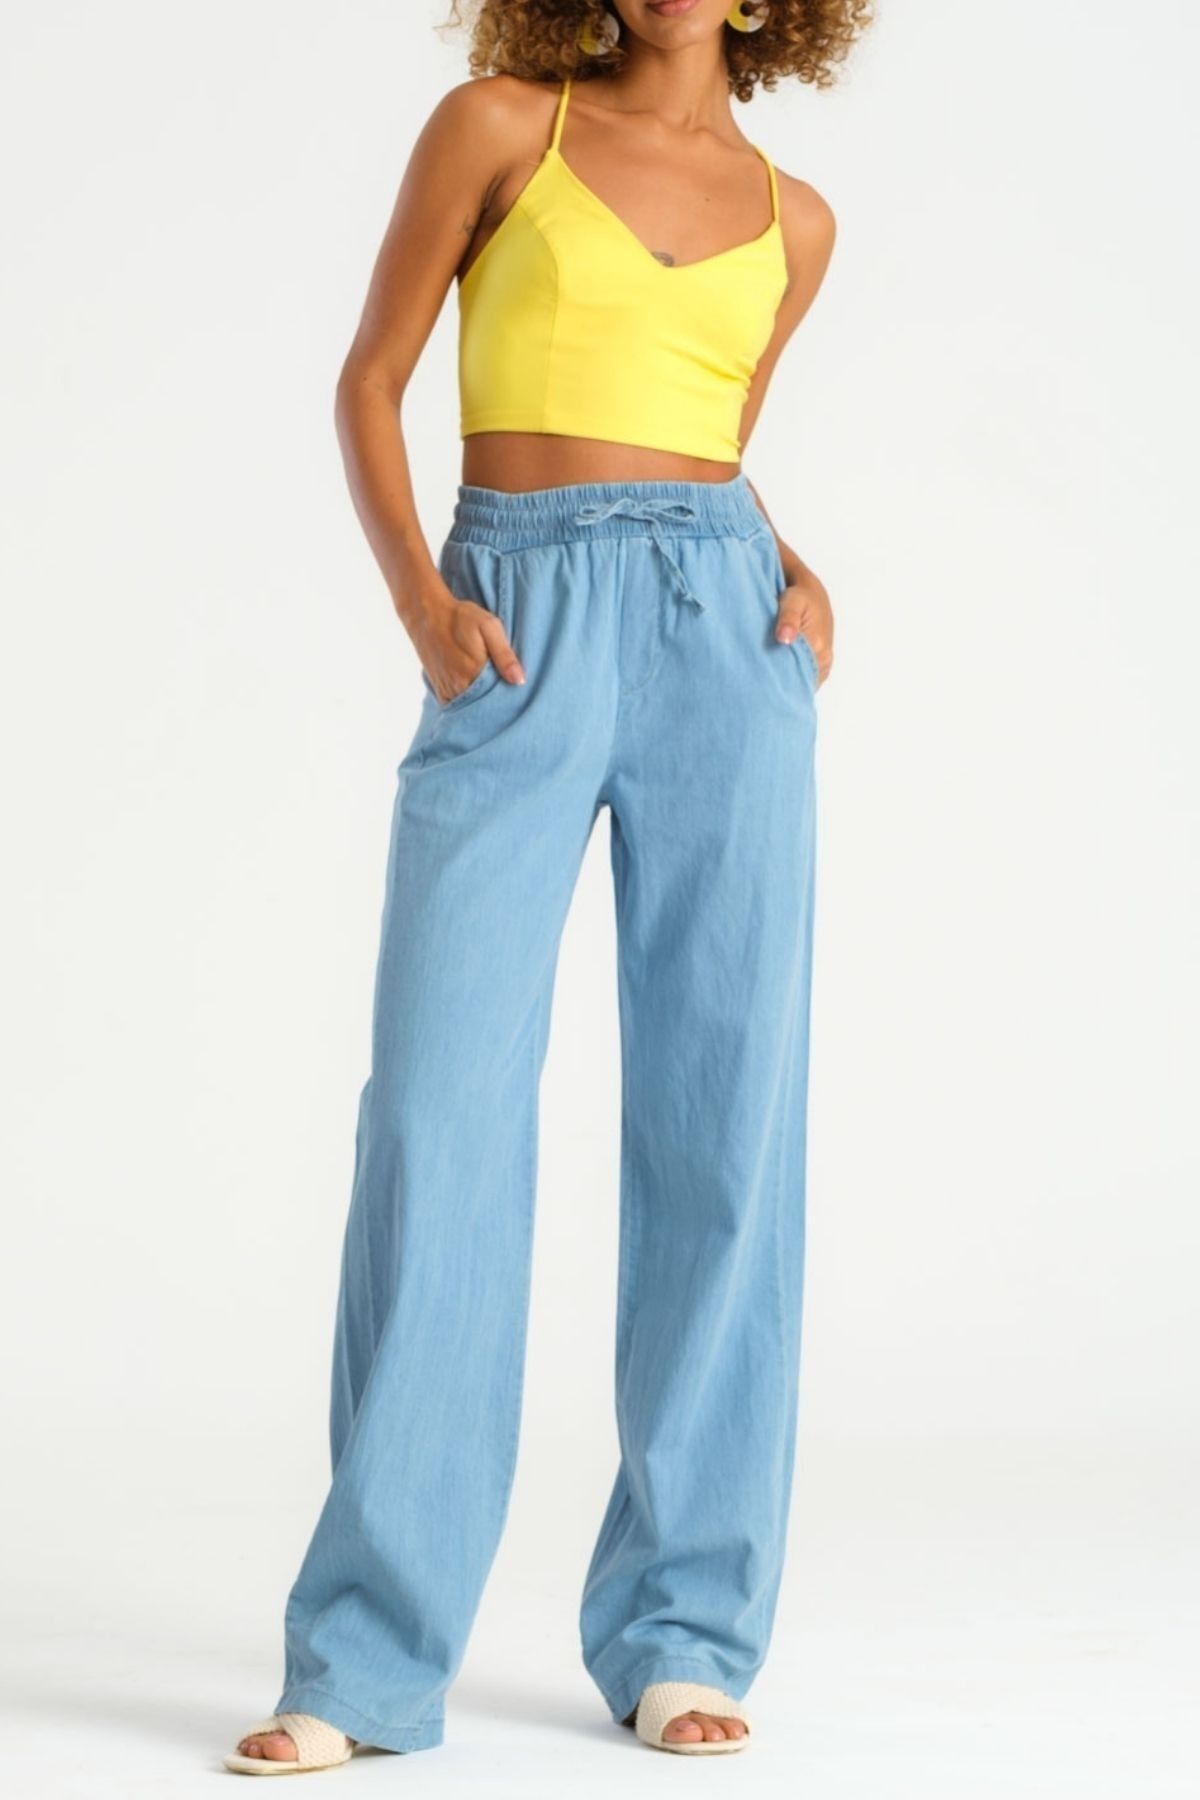 its basic Kadın Açık Mavi Renk Ince Yazlık Kumaş Beli Lastikli Pantolon